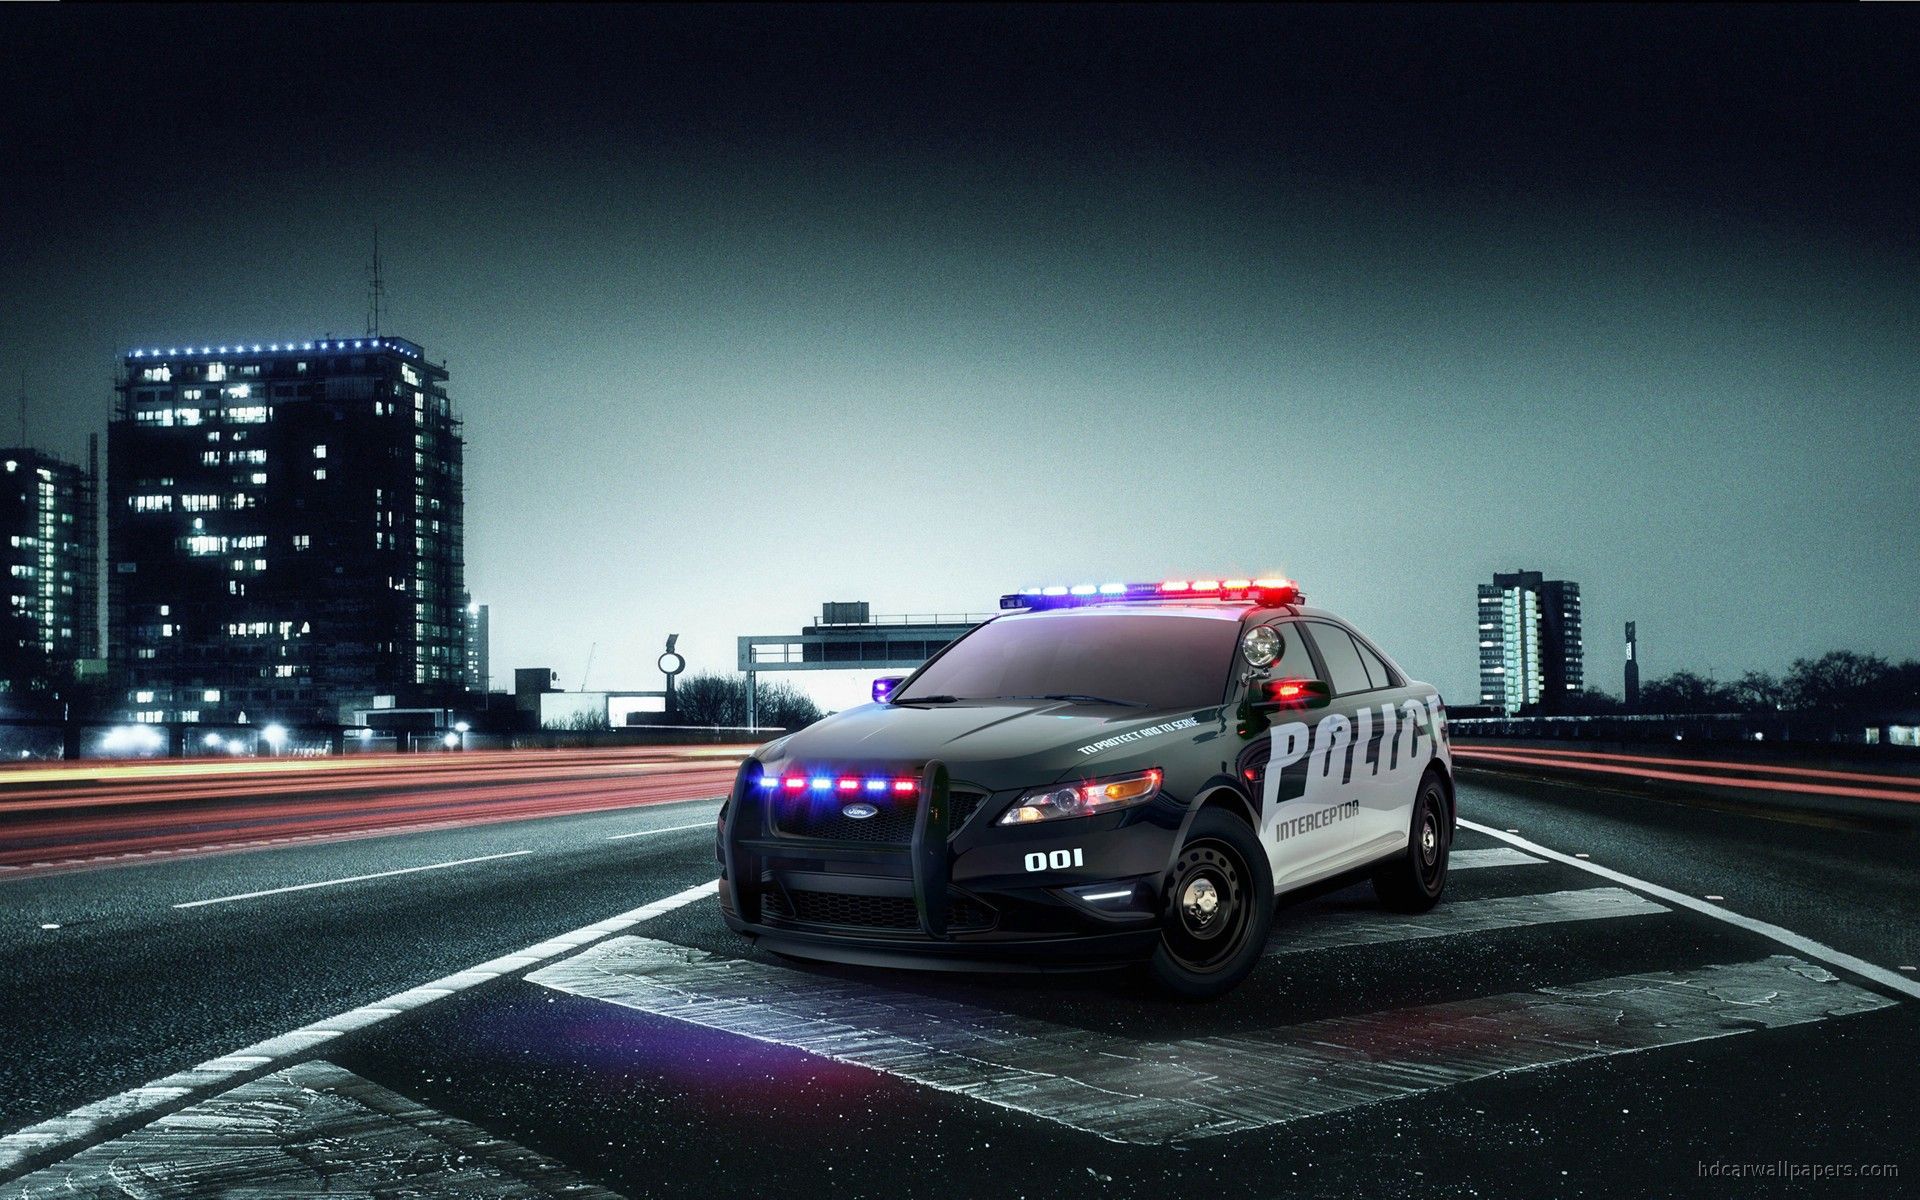 Free Car Desktop Wallpaper Ford police Police cars Police